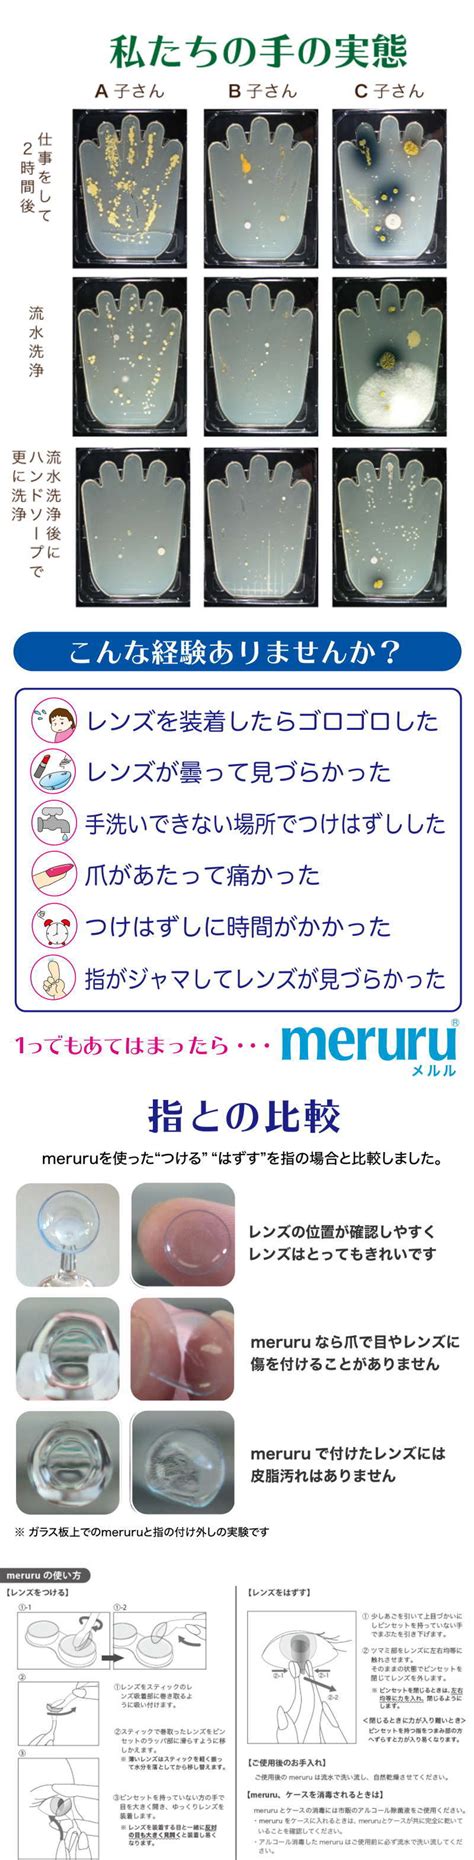 【未使用】meruru メルル 1個 ソフトコンタクトつけはずし器具 スティック ピンセット シリコーン 樹脂の落札情報詳細 ヤフオク落札価格検索 オークフリー